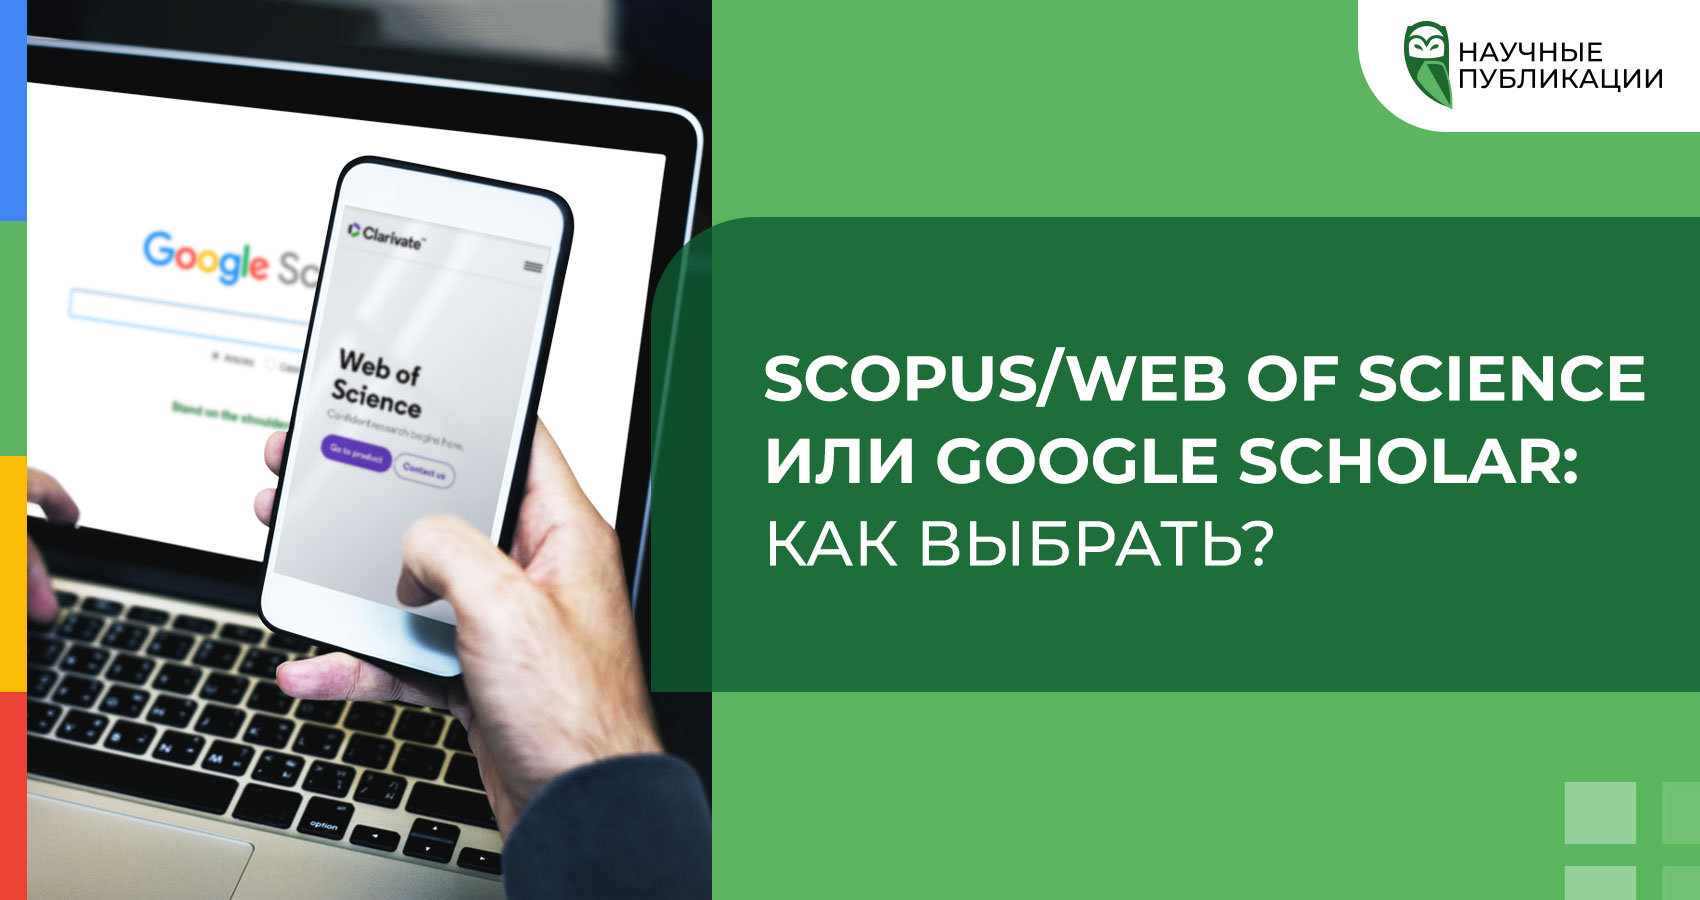 Scopus/Web of Science vs. Google Scholar: как выбрать?